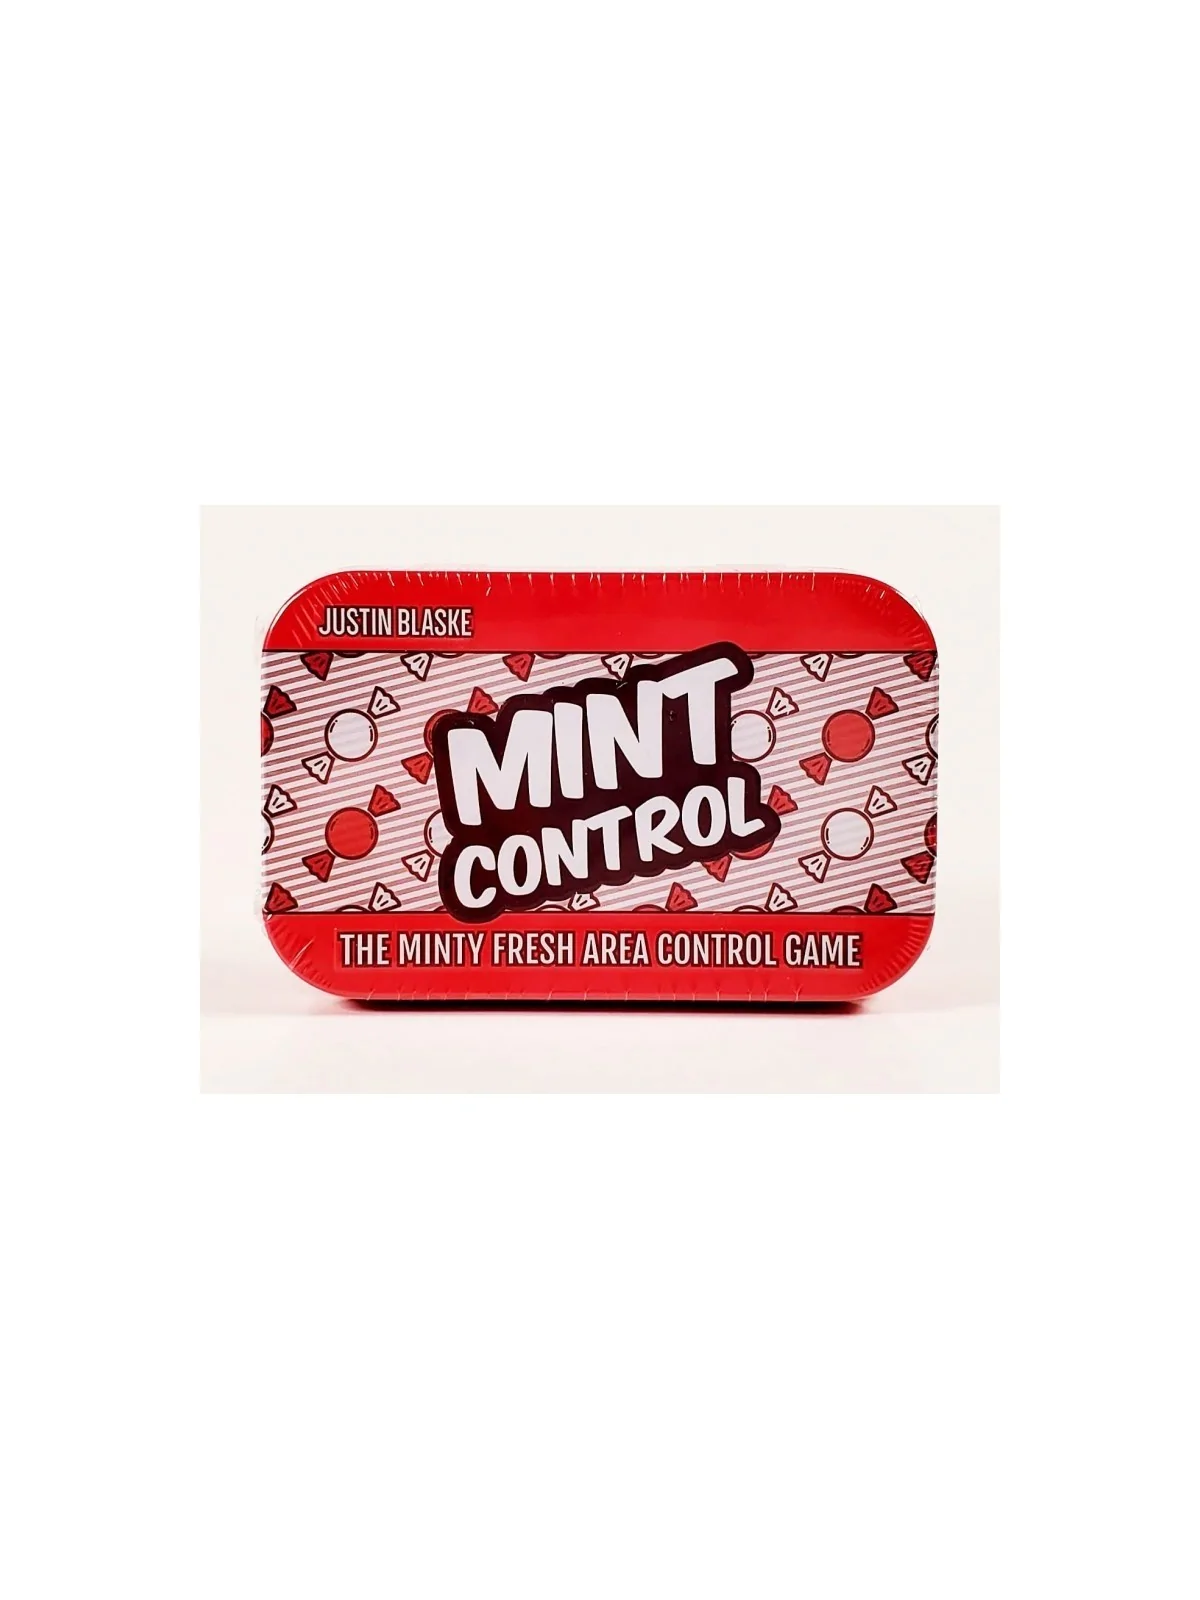 Comprar Mint Control (Inglés) barato al mejor precio 13,50 € de Pokett